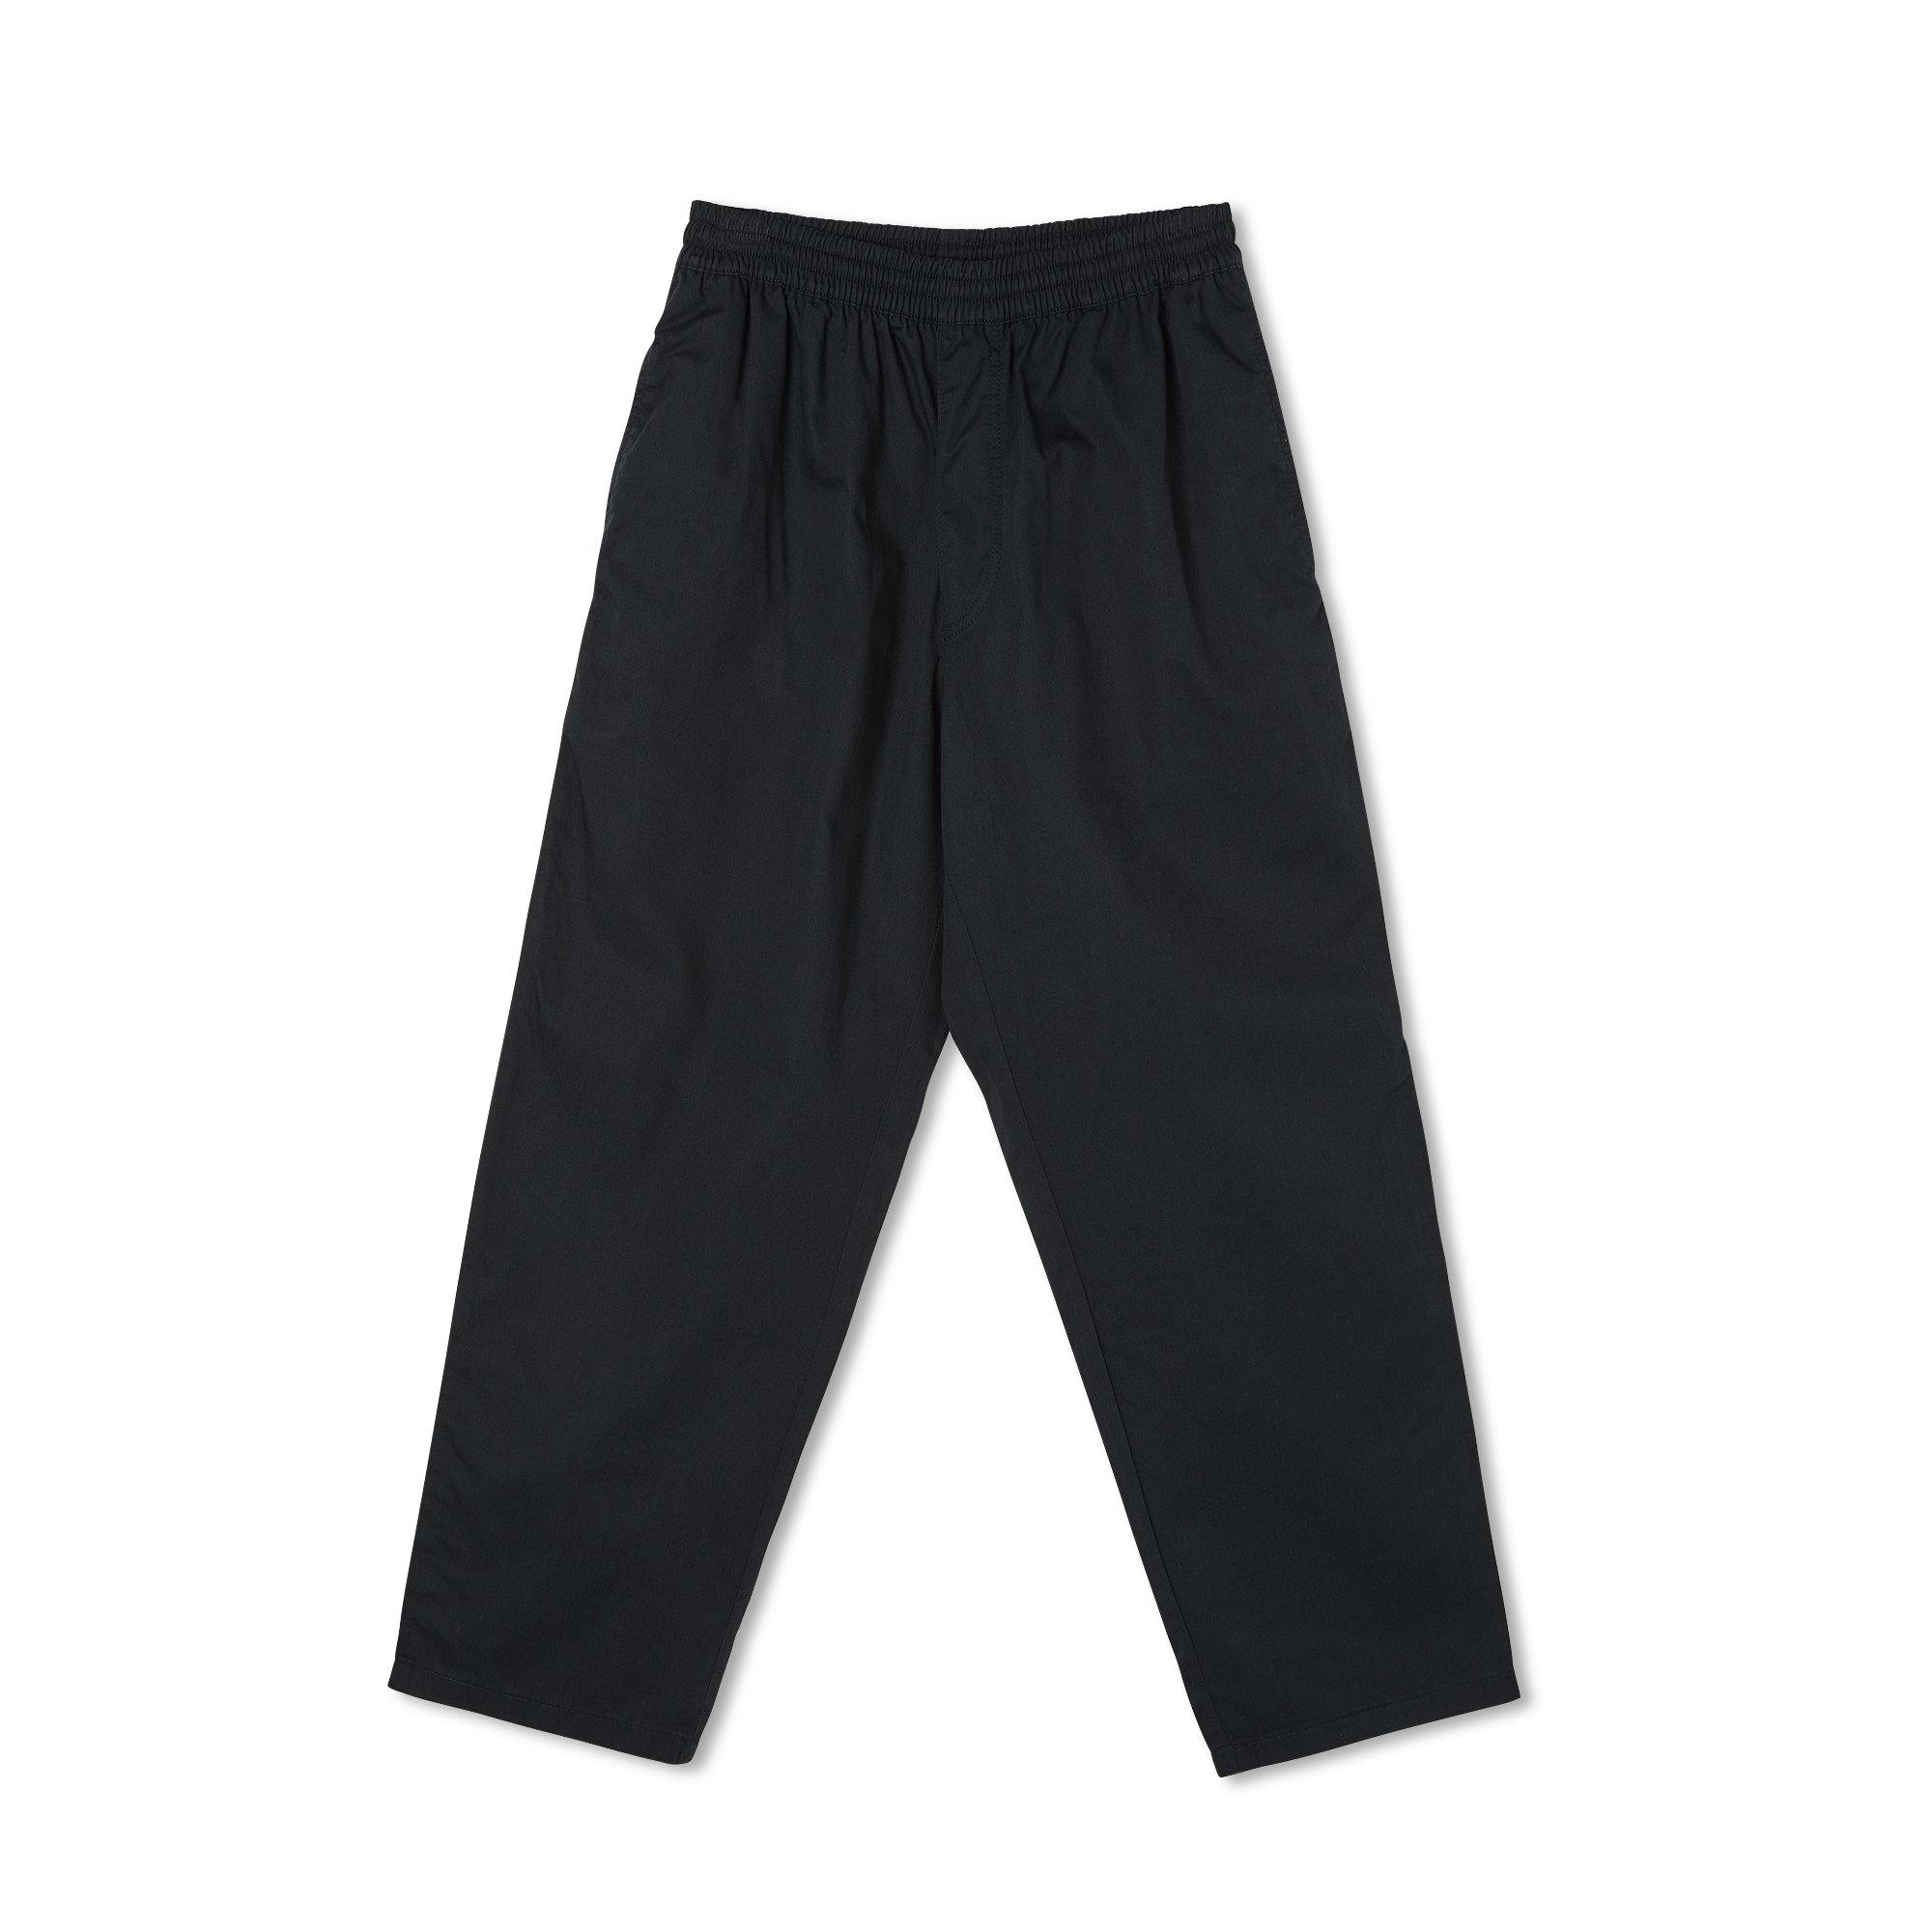 Pantalon POLAR Surf Pants Black - Noir - SUBIACO SKATESHOP